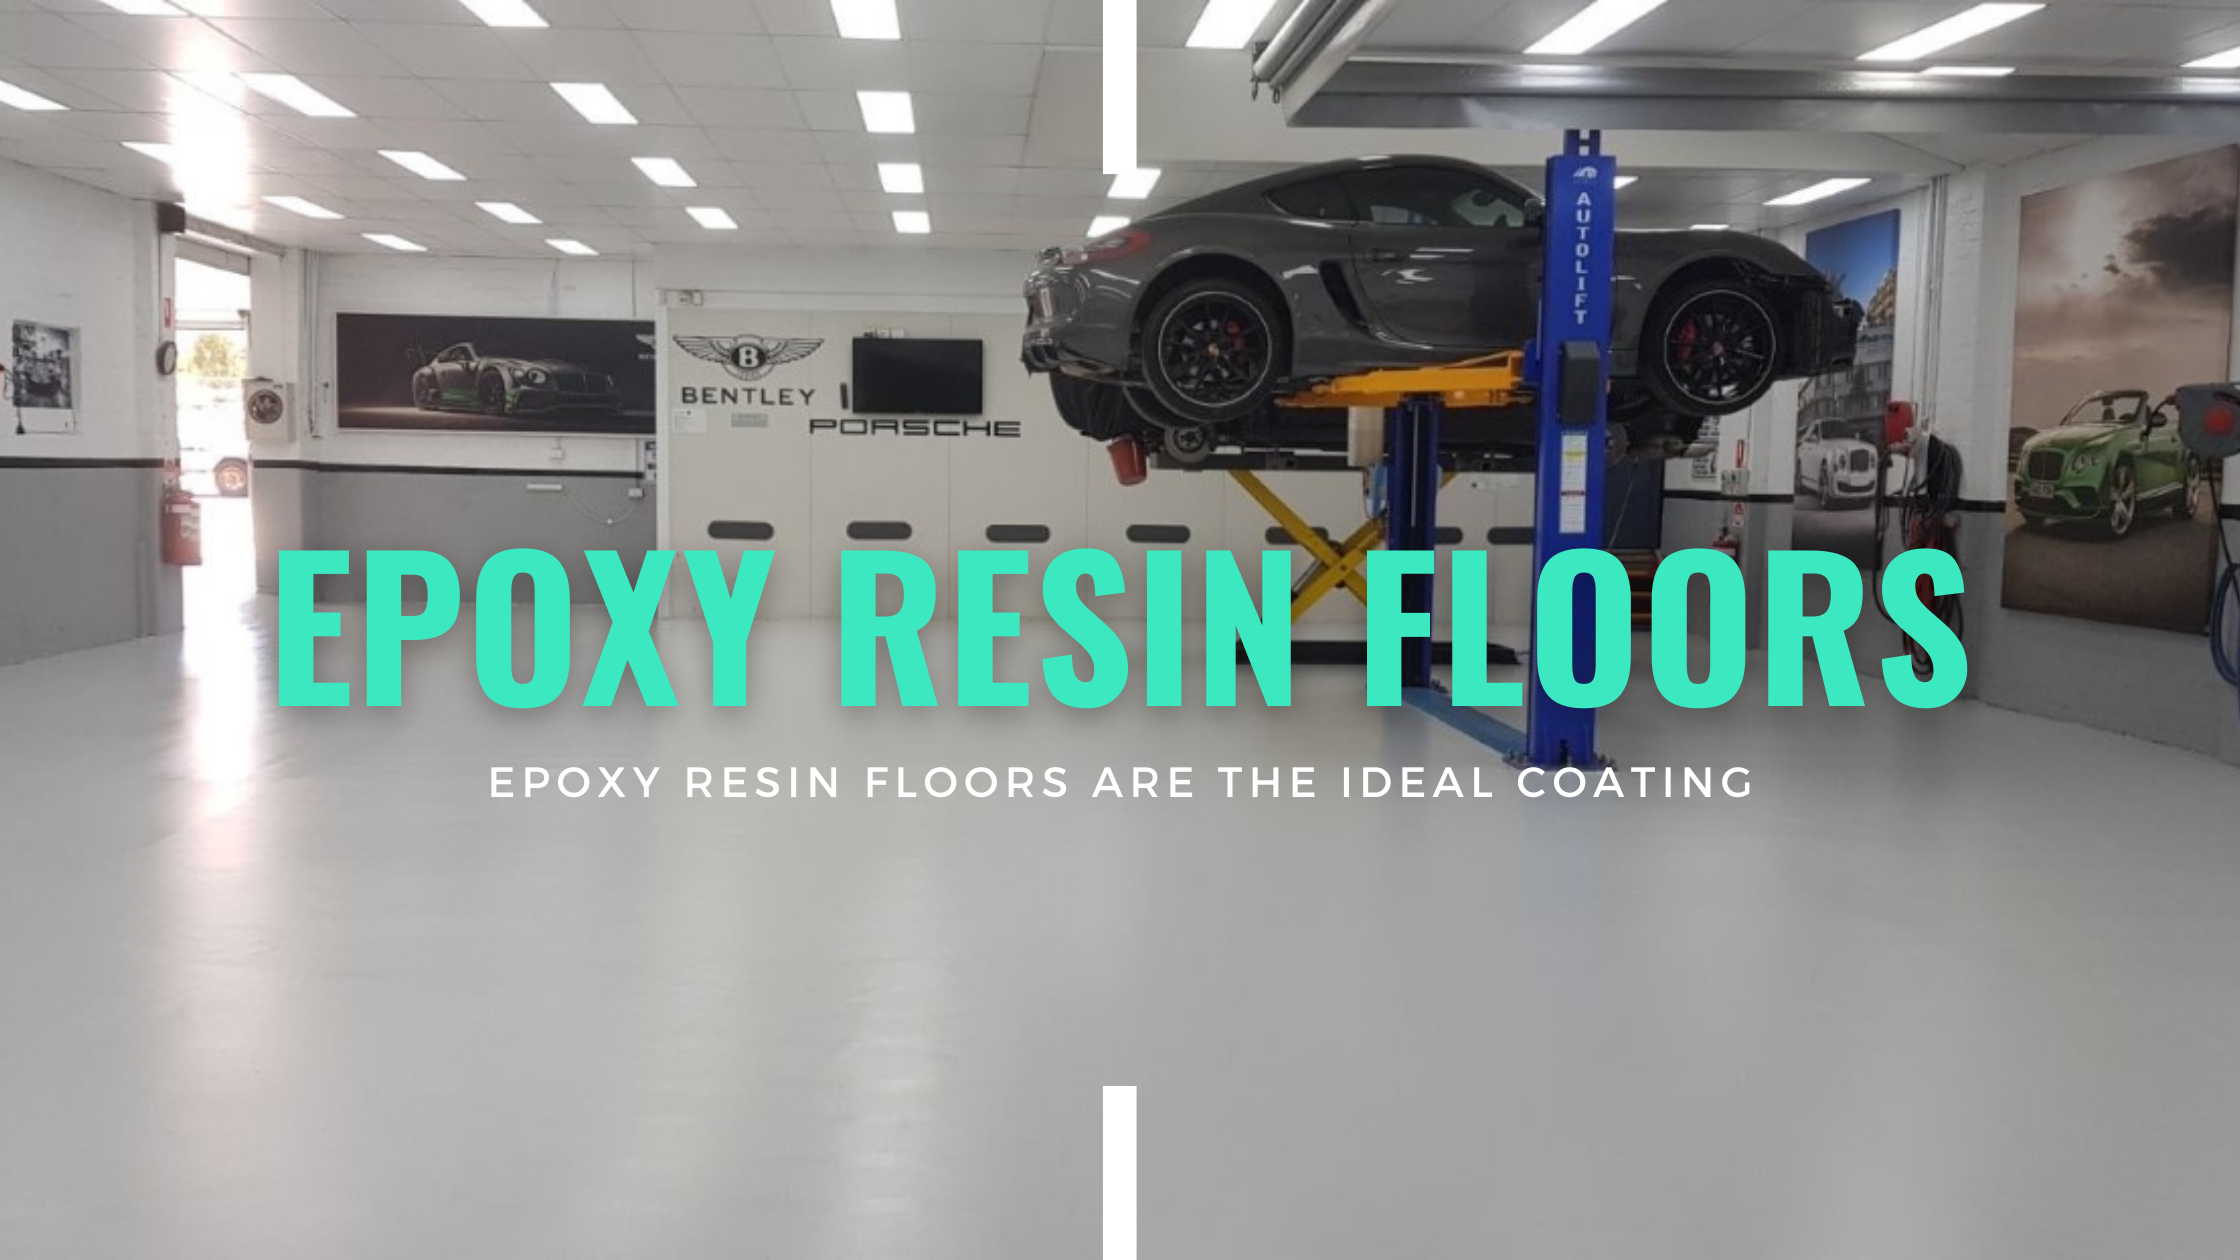 Epoxy resin floors